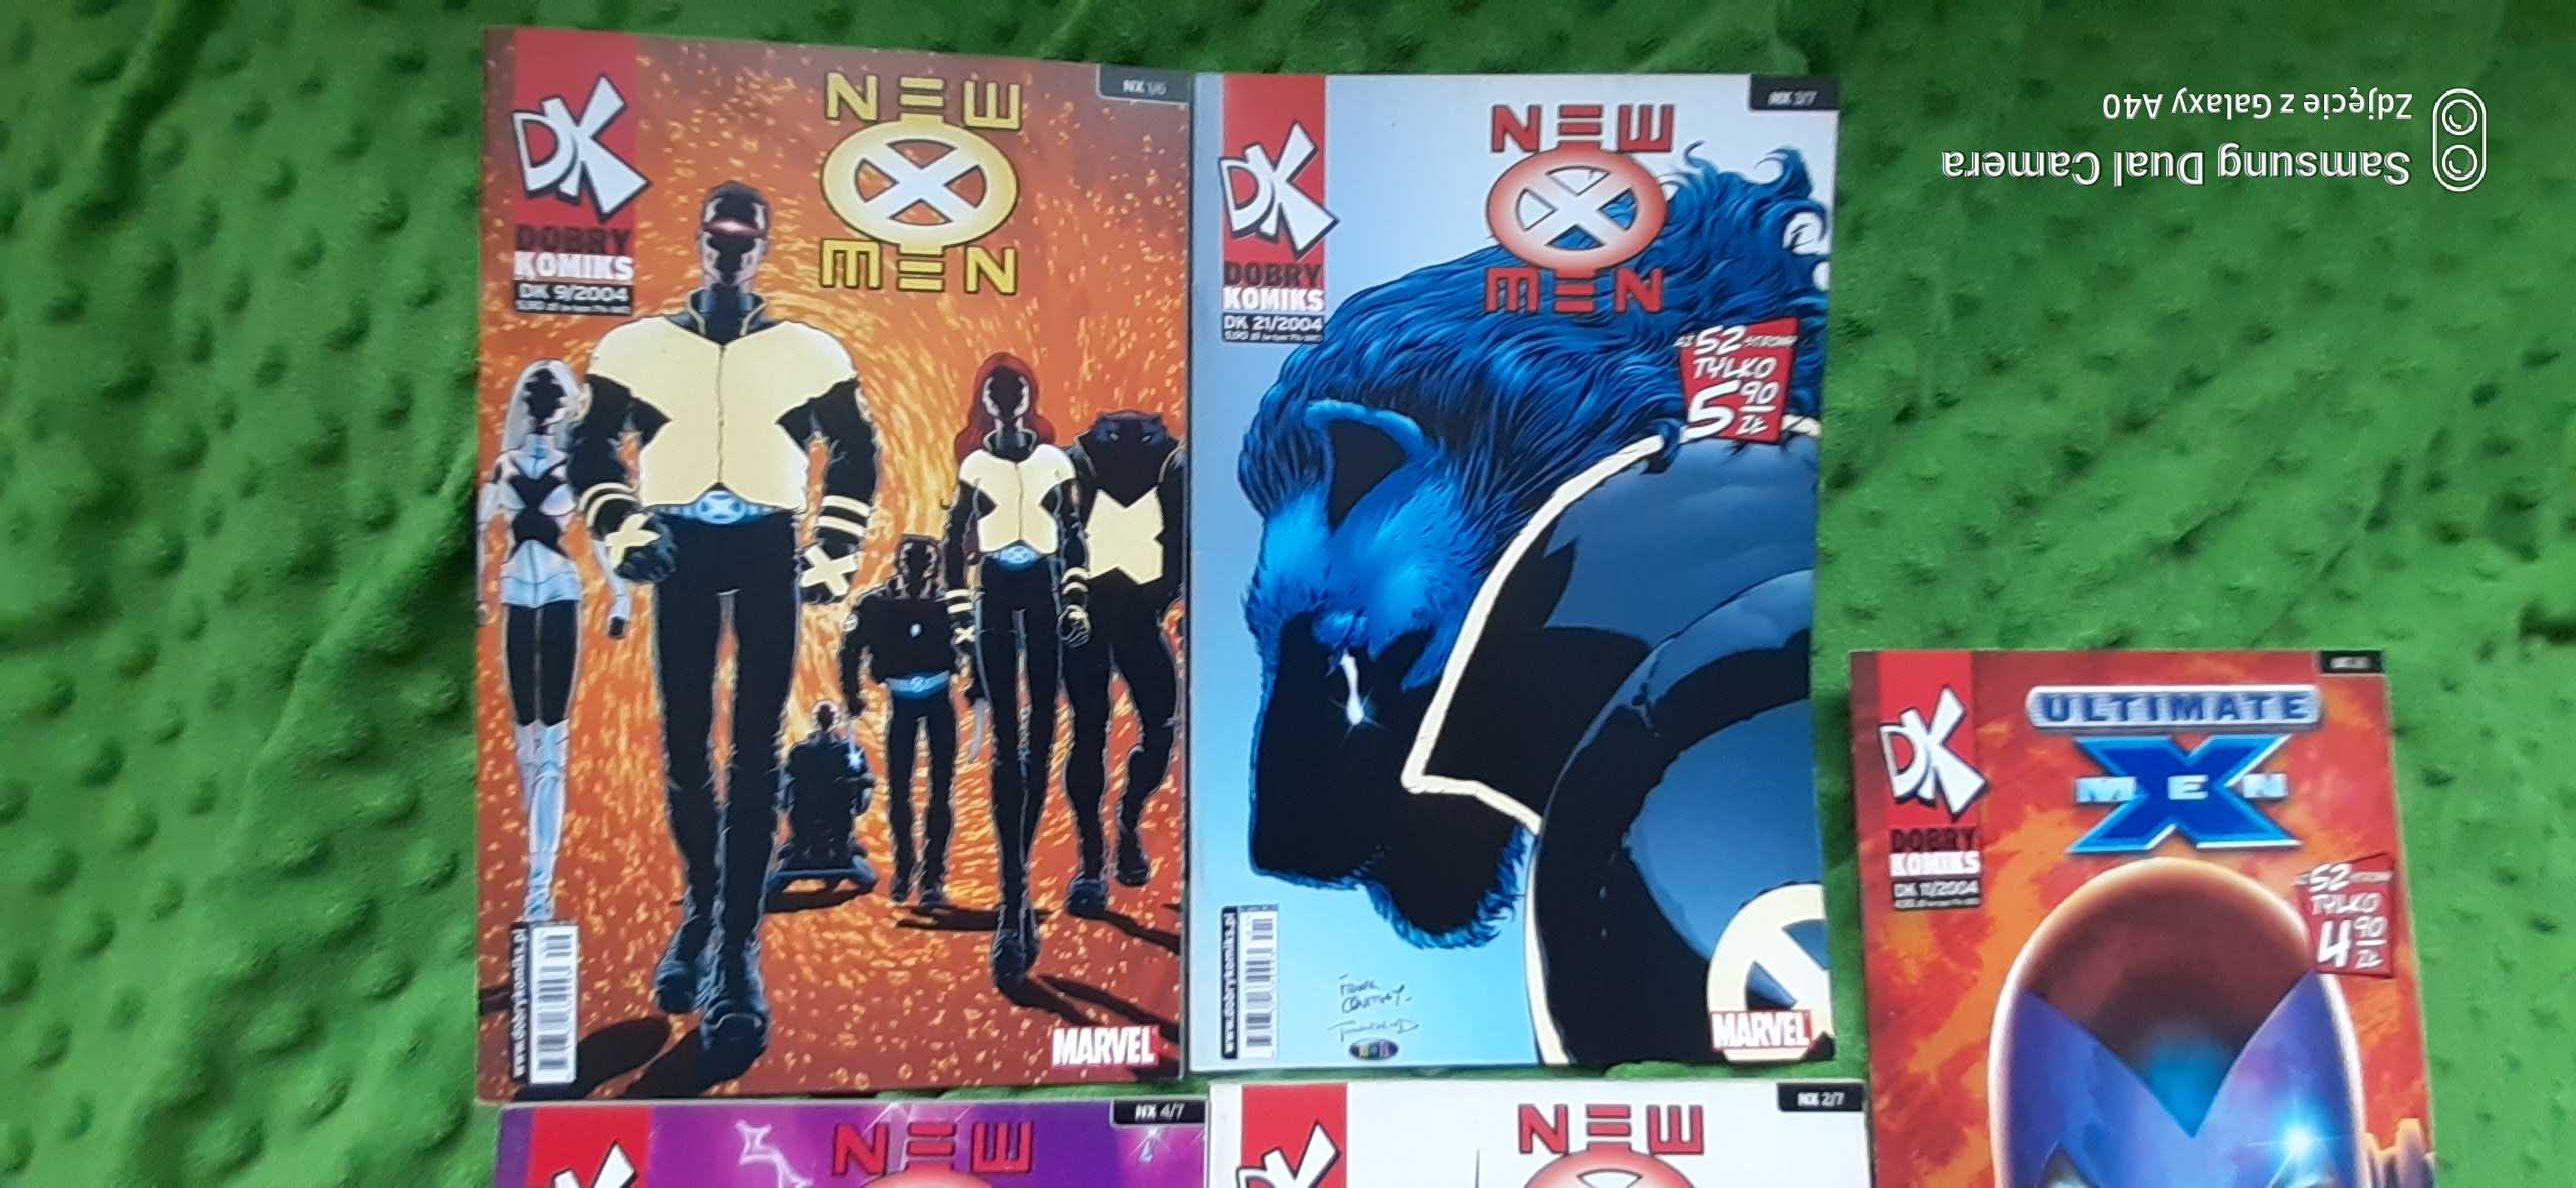 New X-men (dobry komiks) 5 komiksów